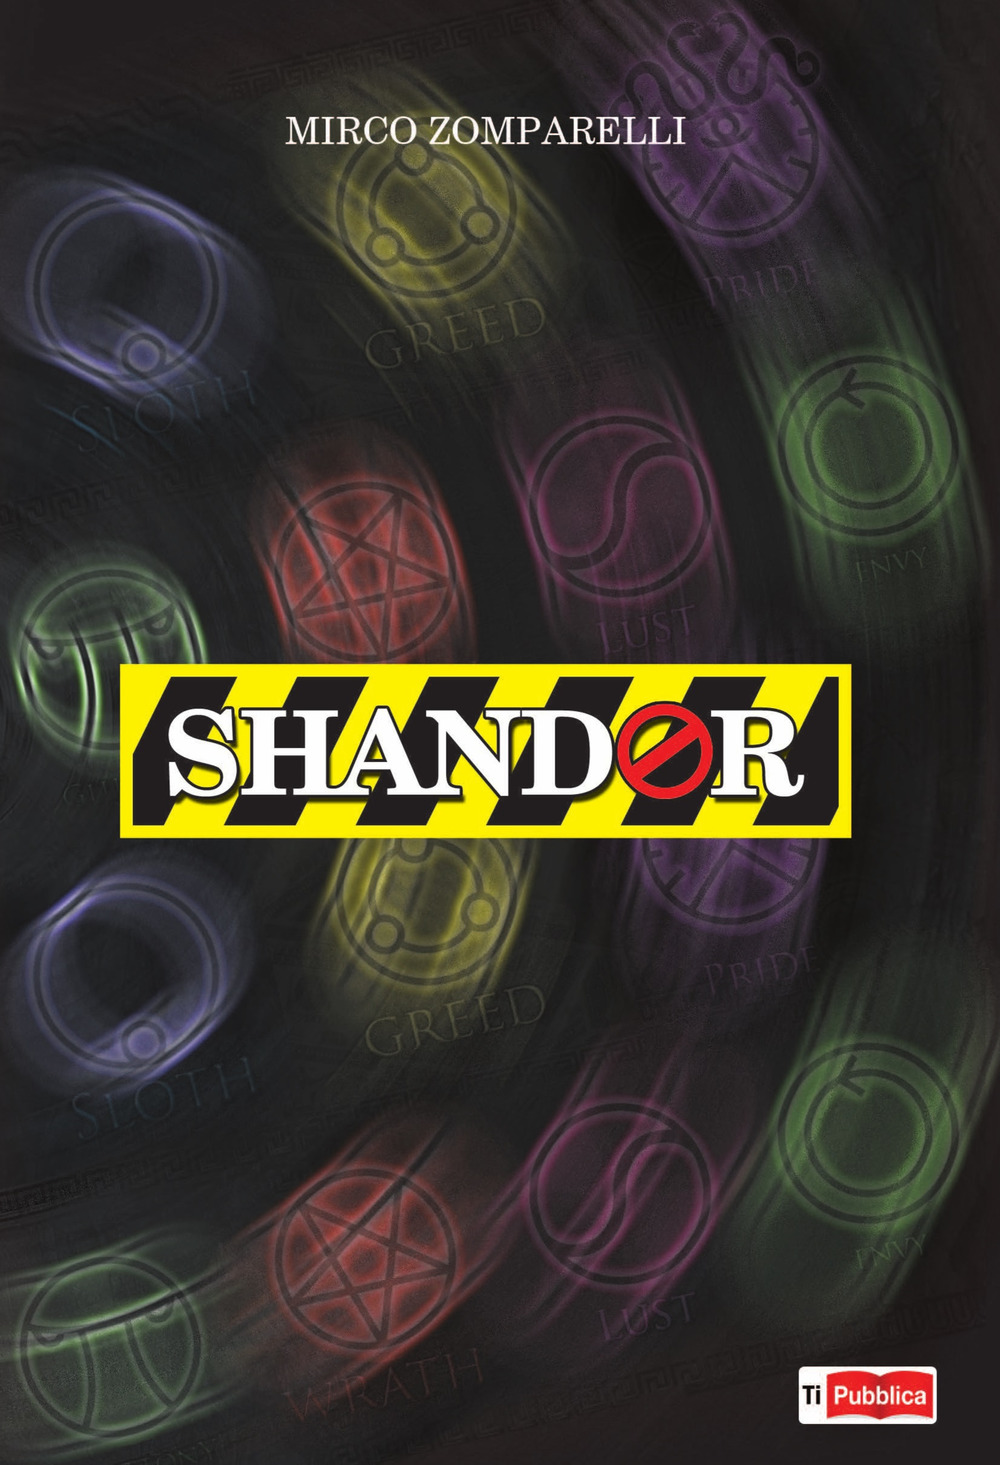 Shandor